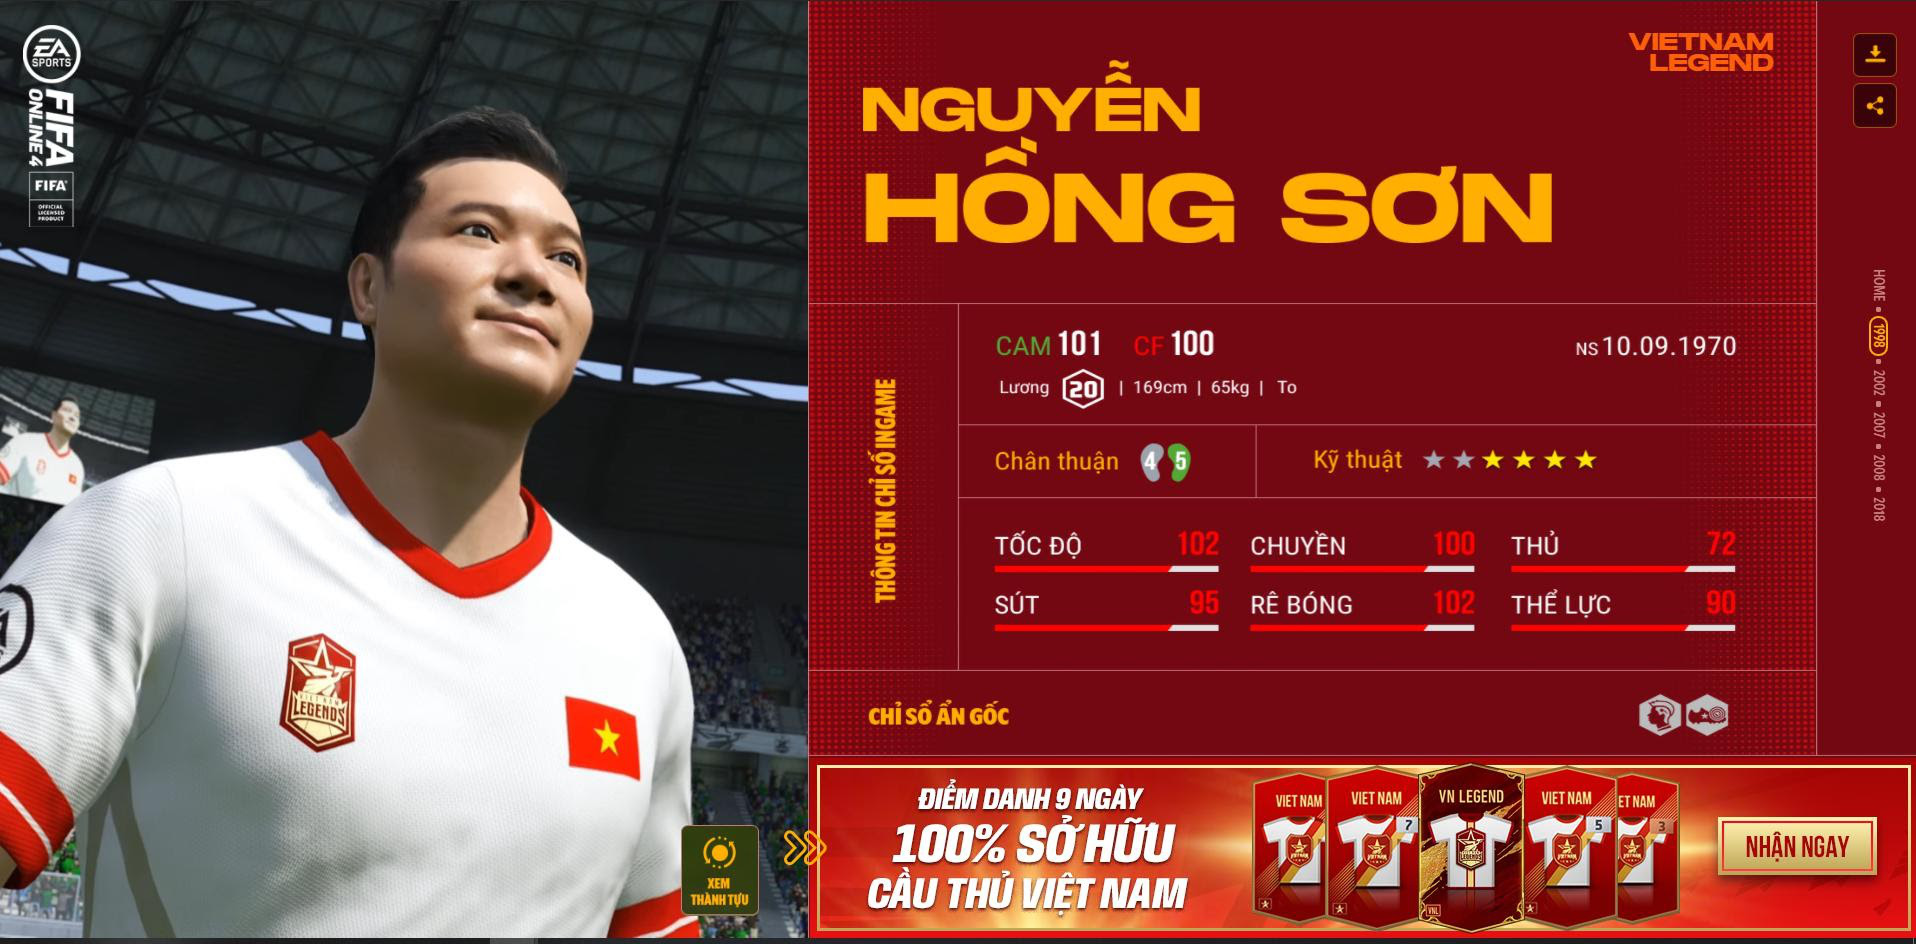 Nguyễn Hồng Sơn - huyền thoại được yêu mến bậc nhất bóng đá Việt Nam được tái hiện trong FIFA Online 4 như thế nào? - Ảnh 3.